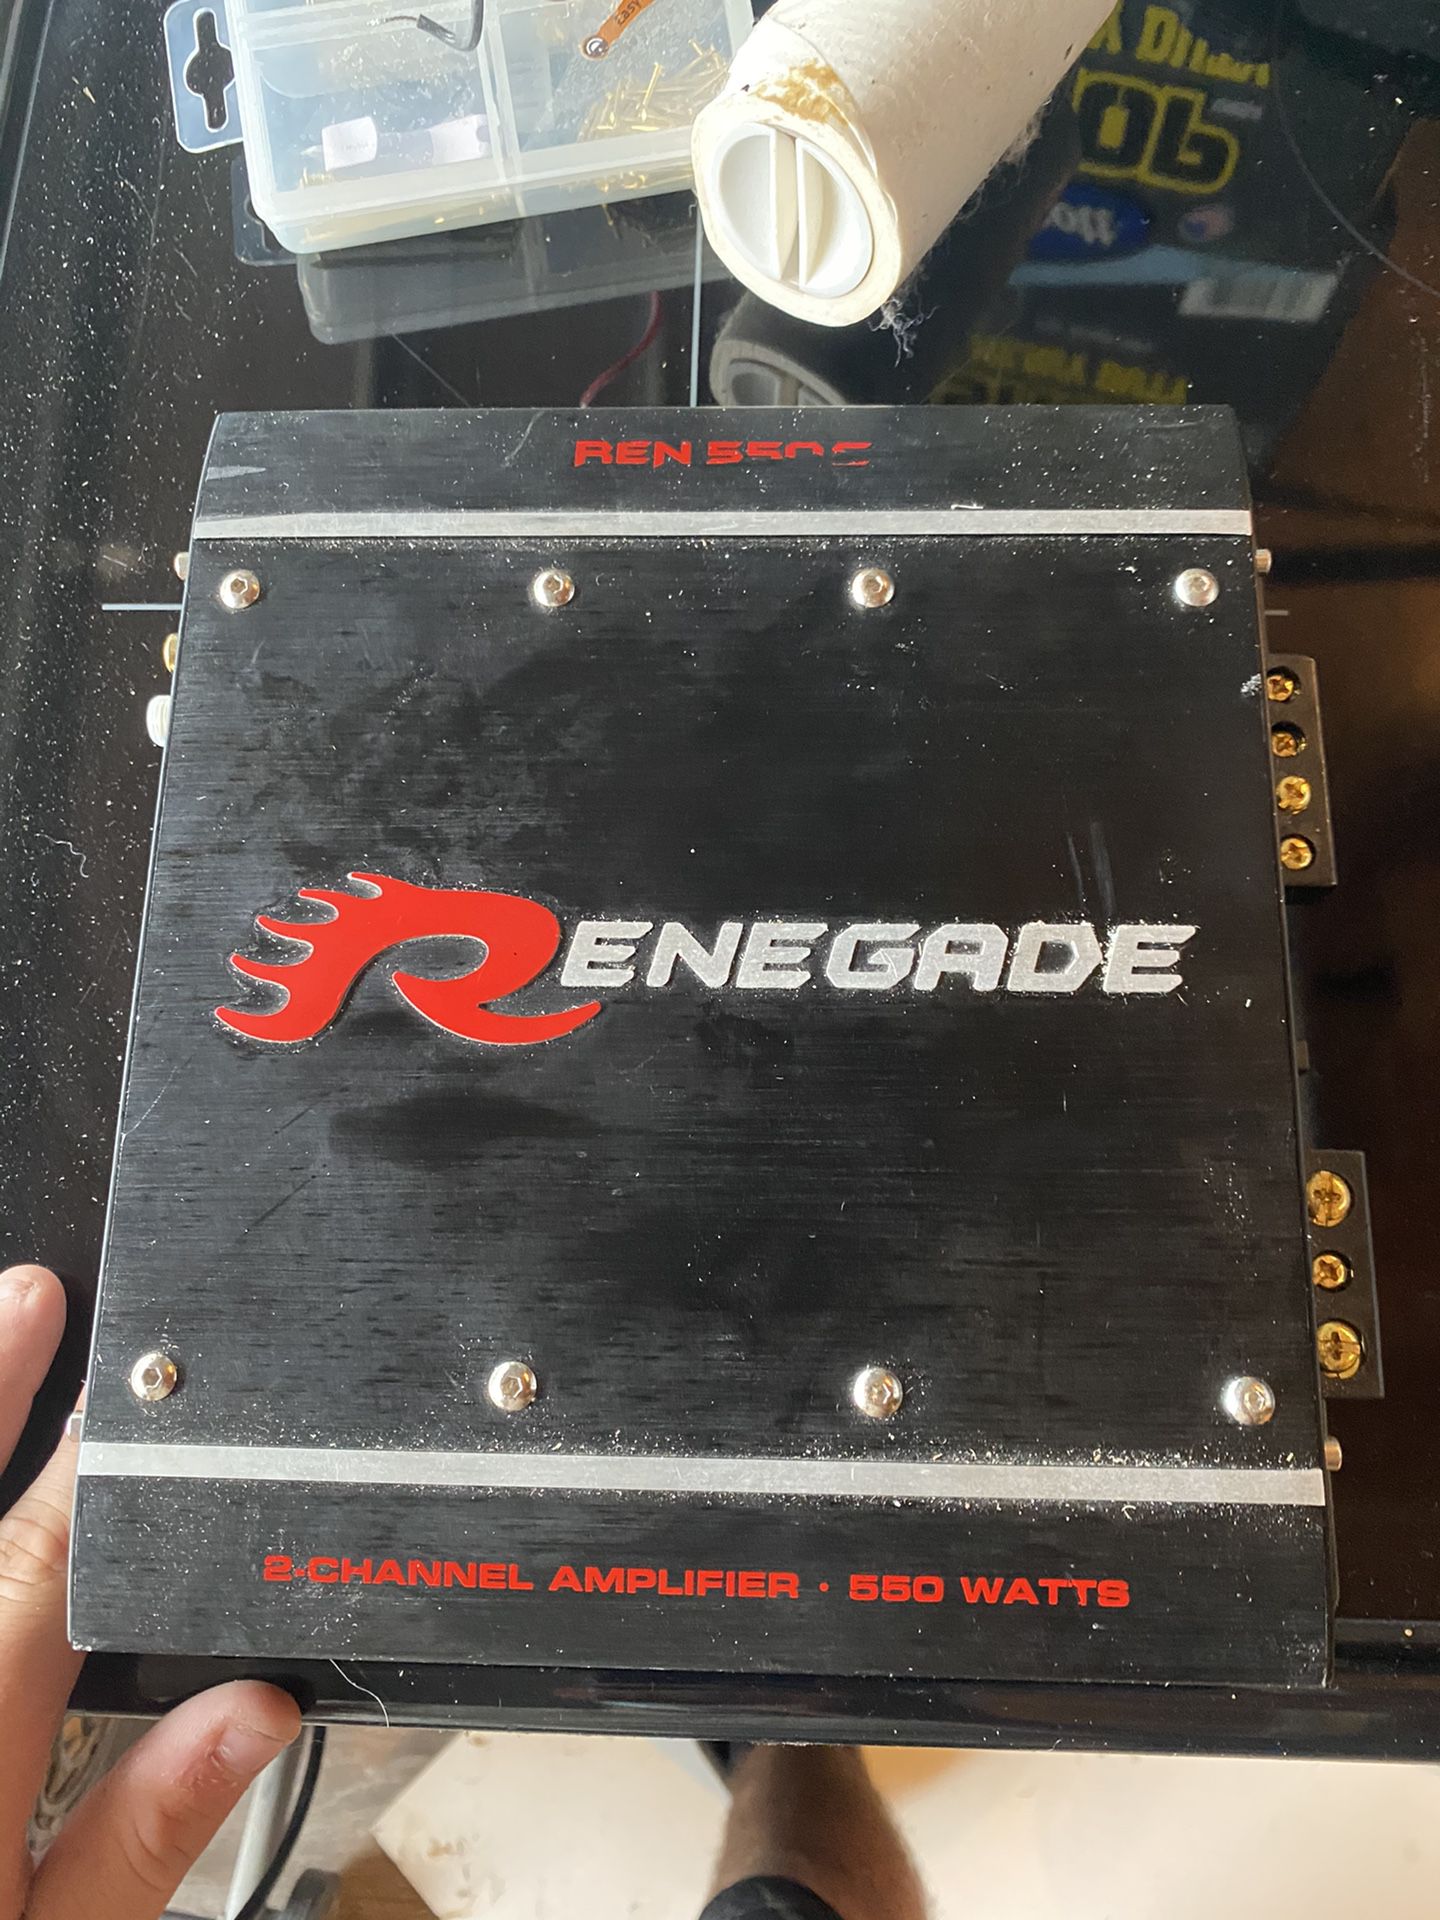 Renegade amplifier